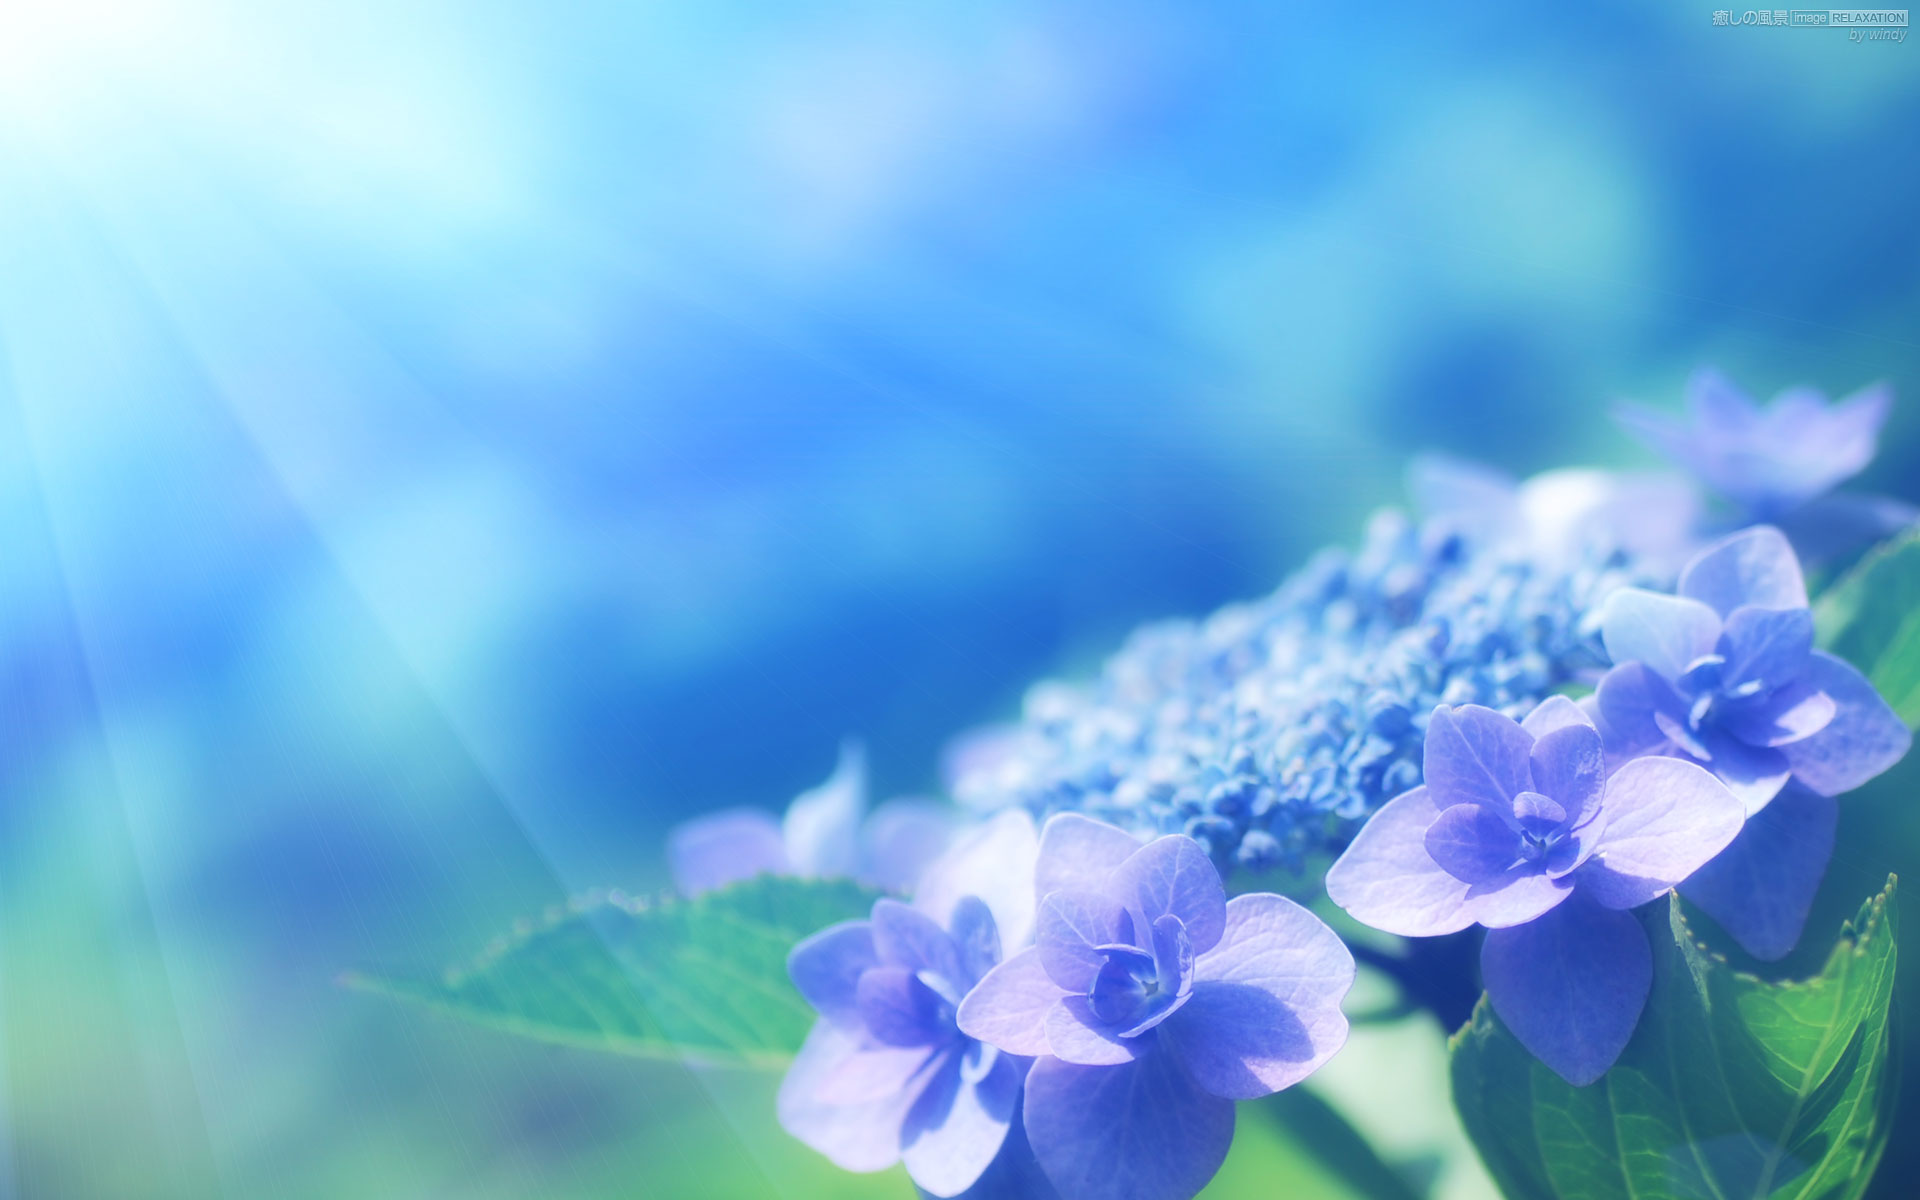 額紫陽花の輝き 癒しの風景 Image Relaxation 癒し壁紙